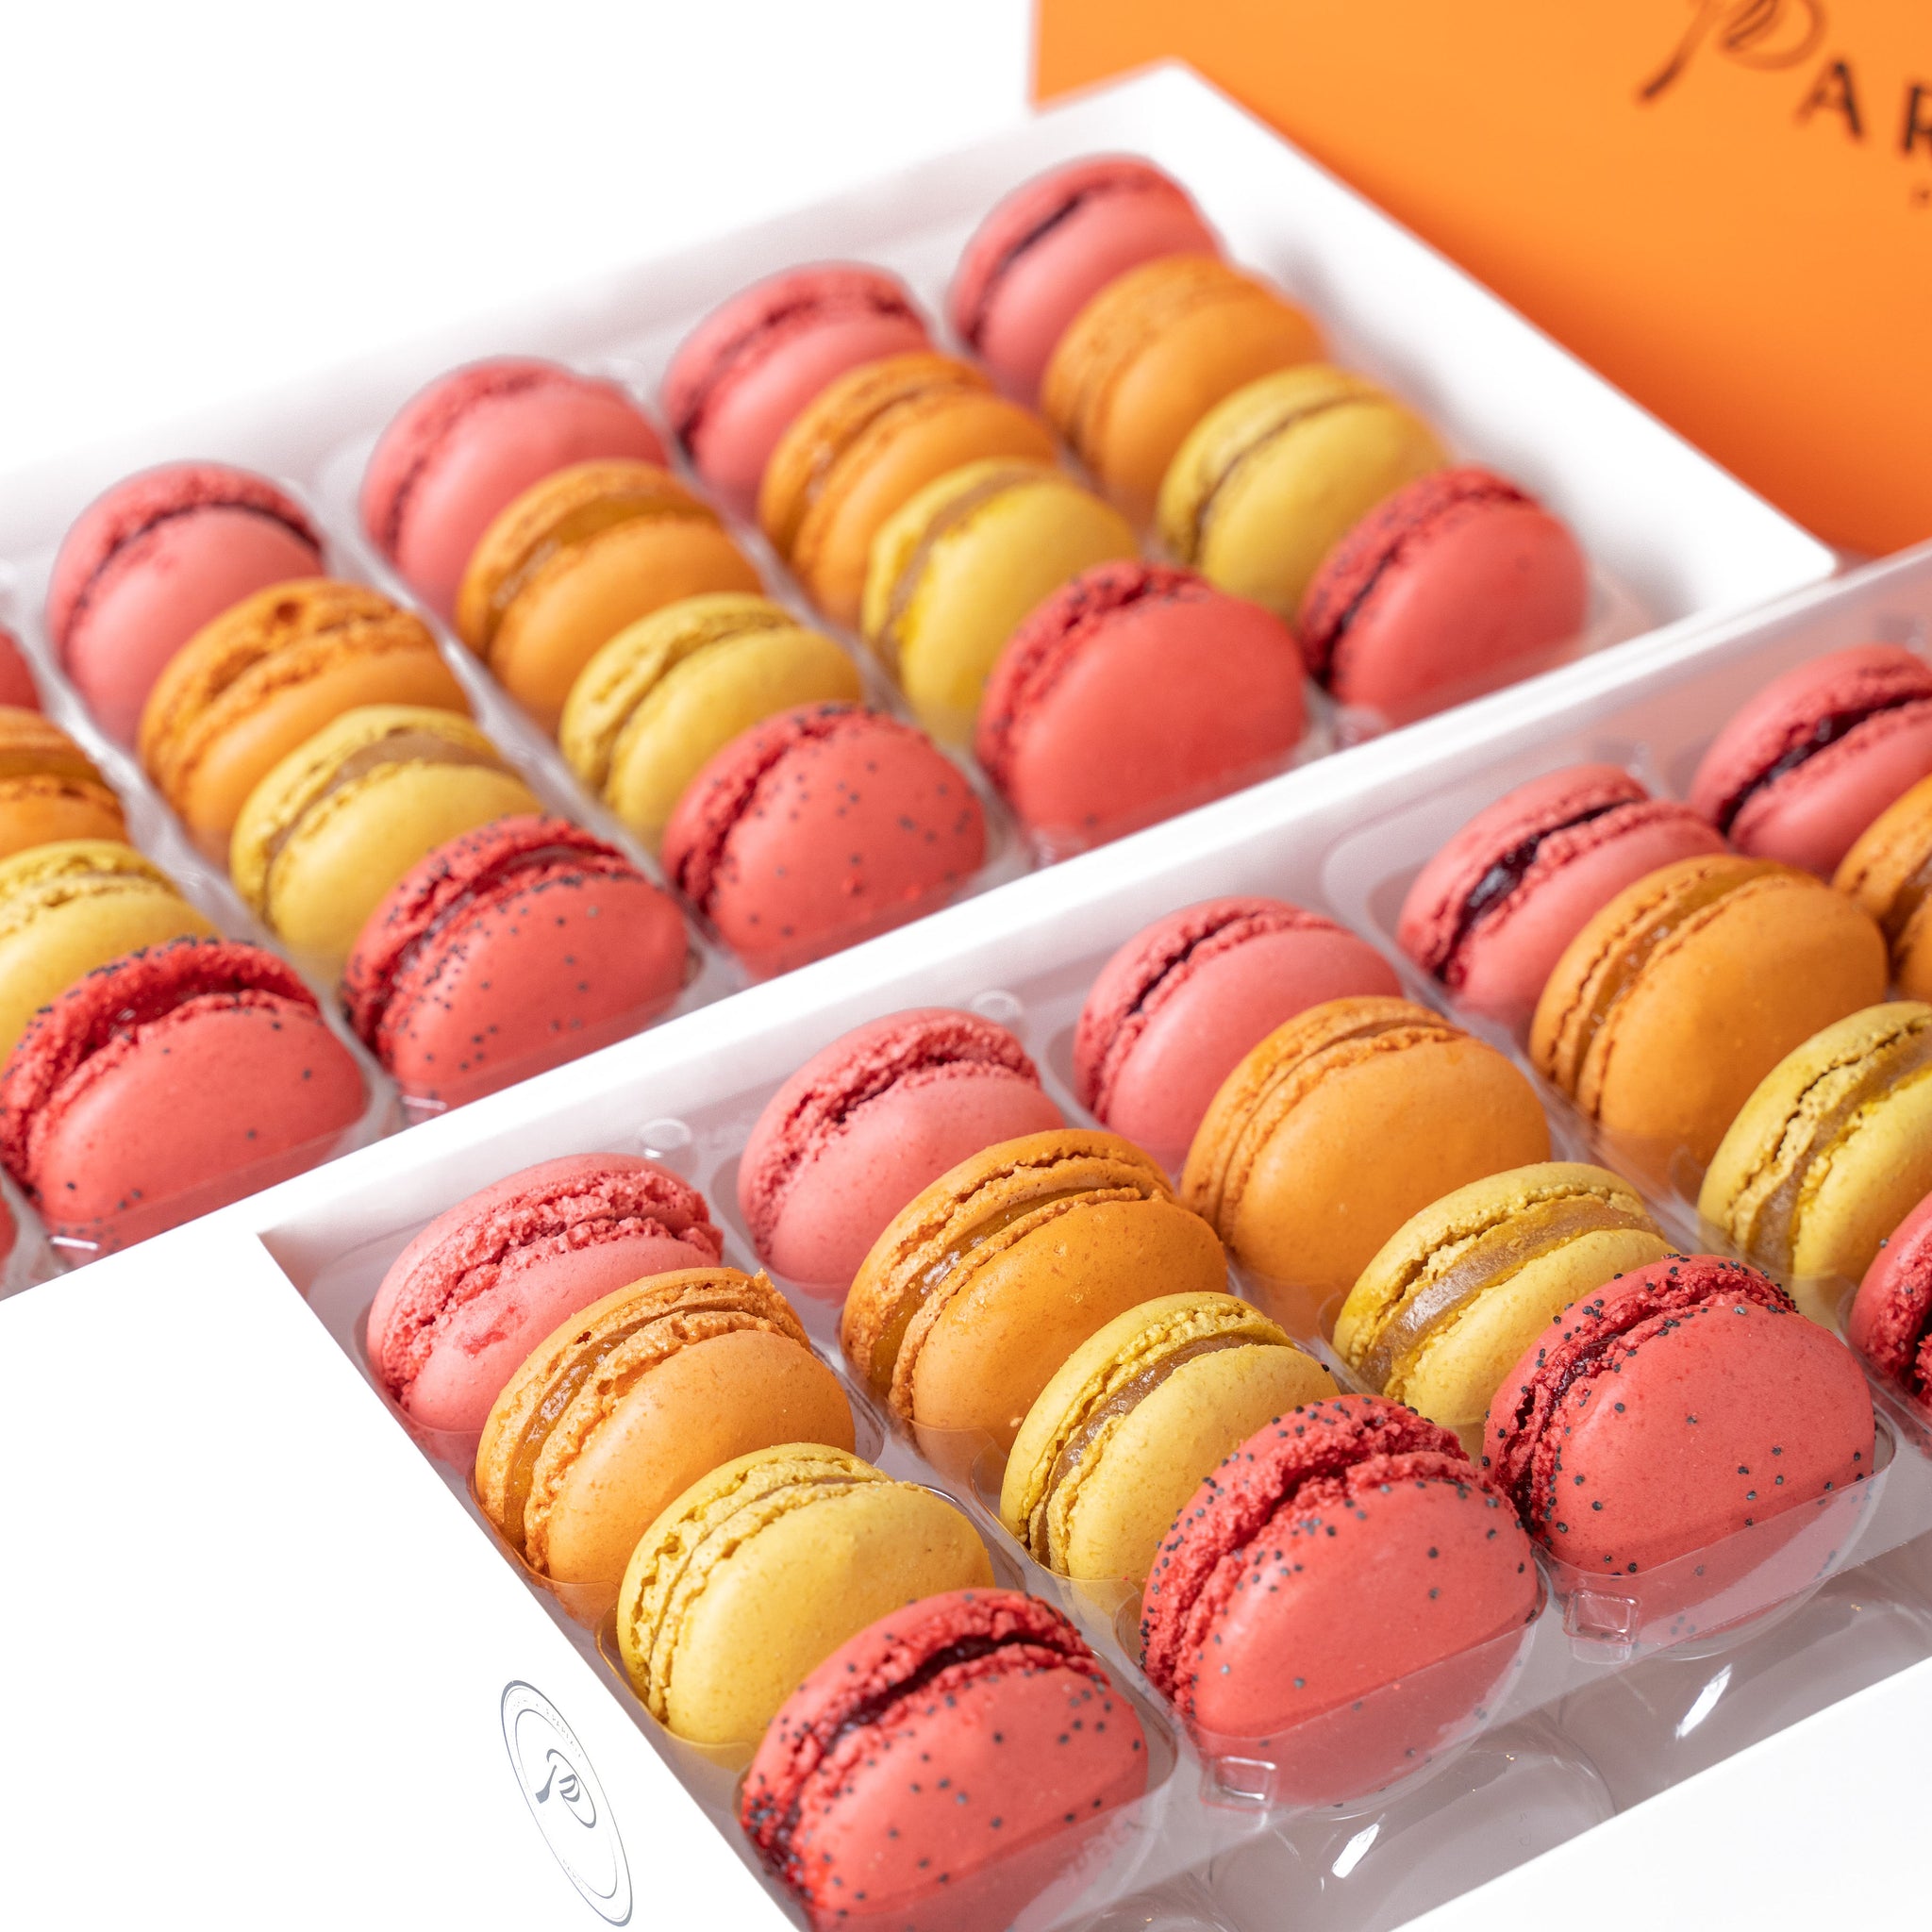 Parfait Paris Macaron Fruit Pack